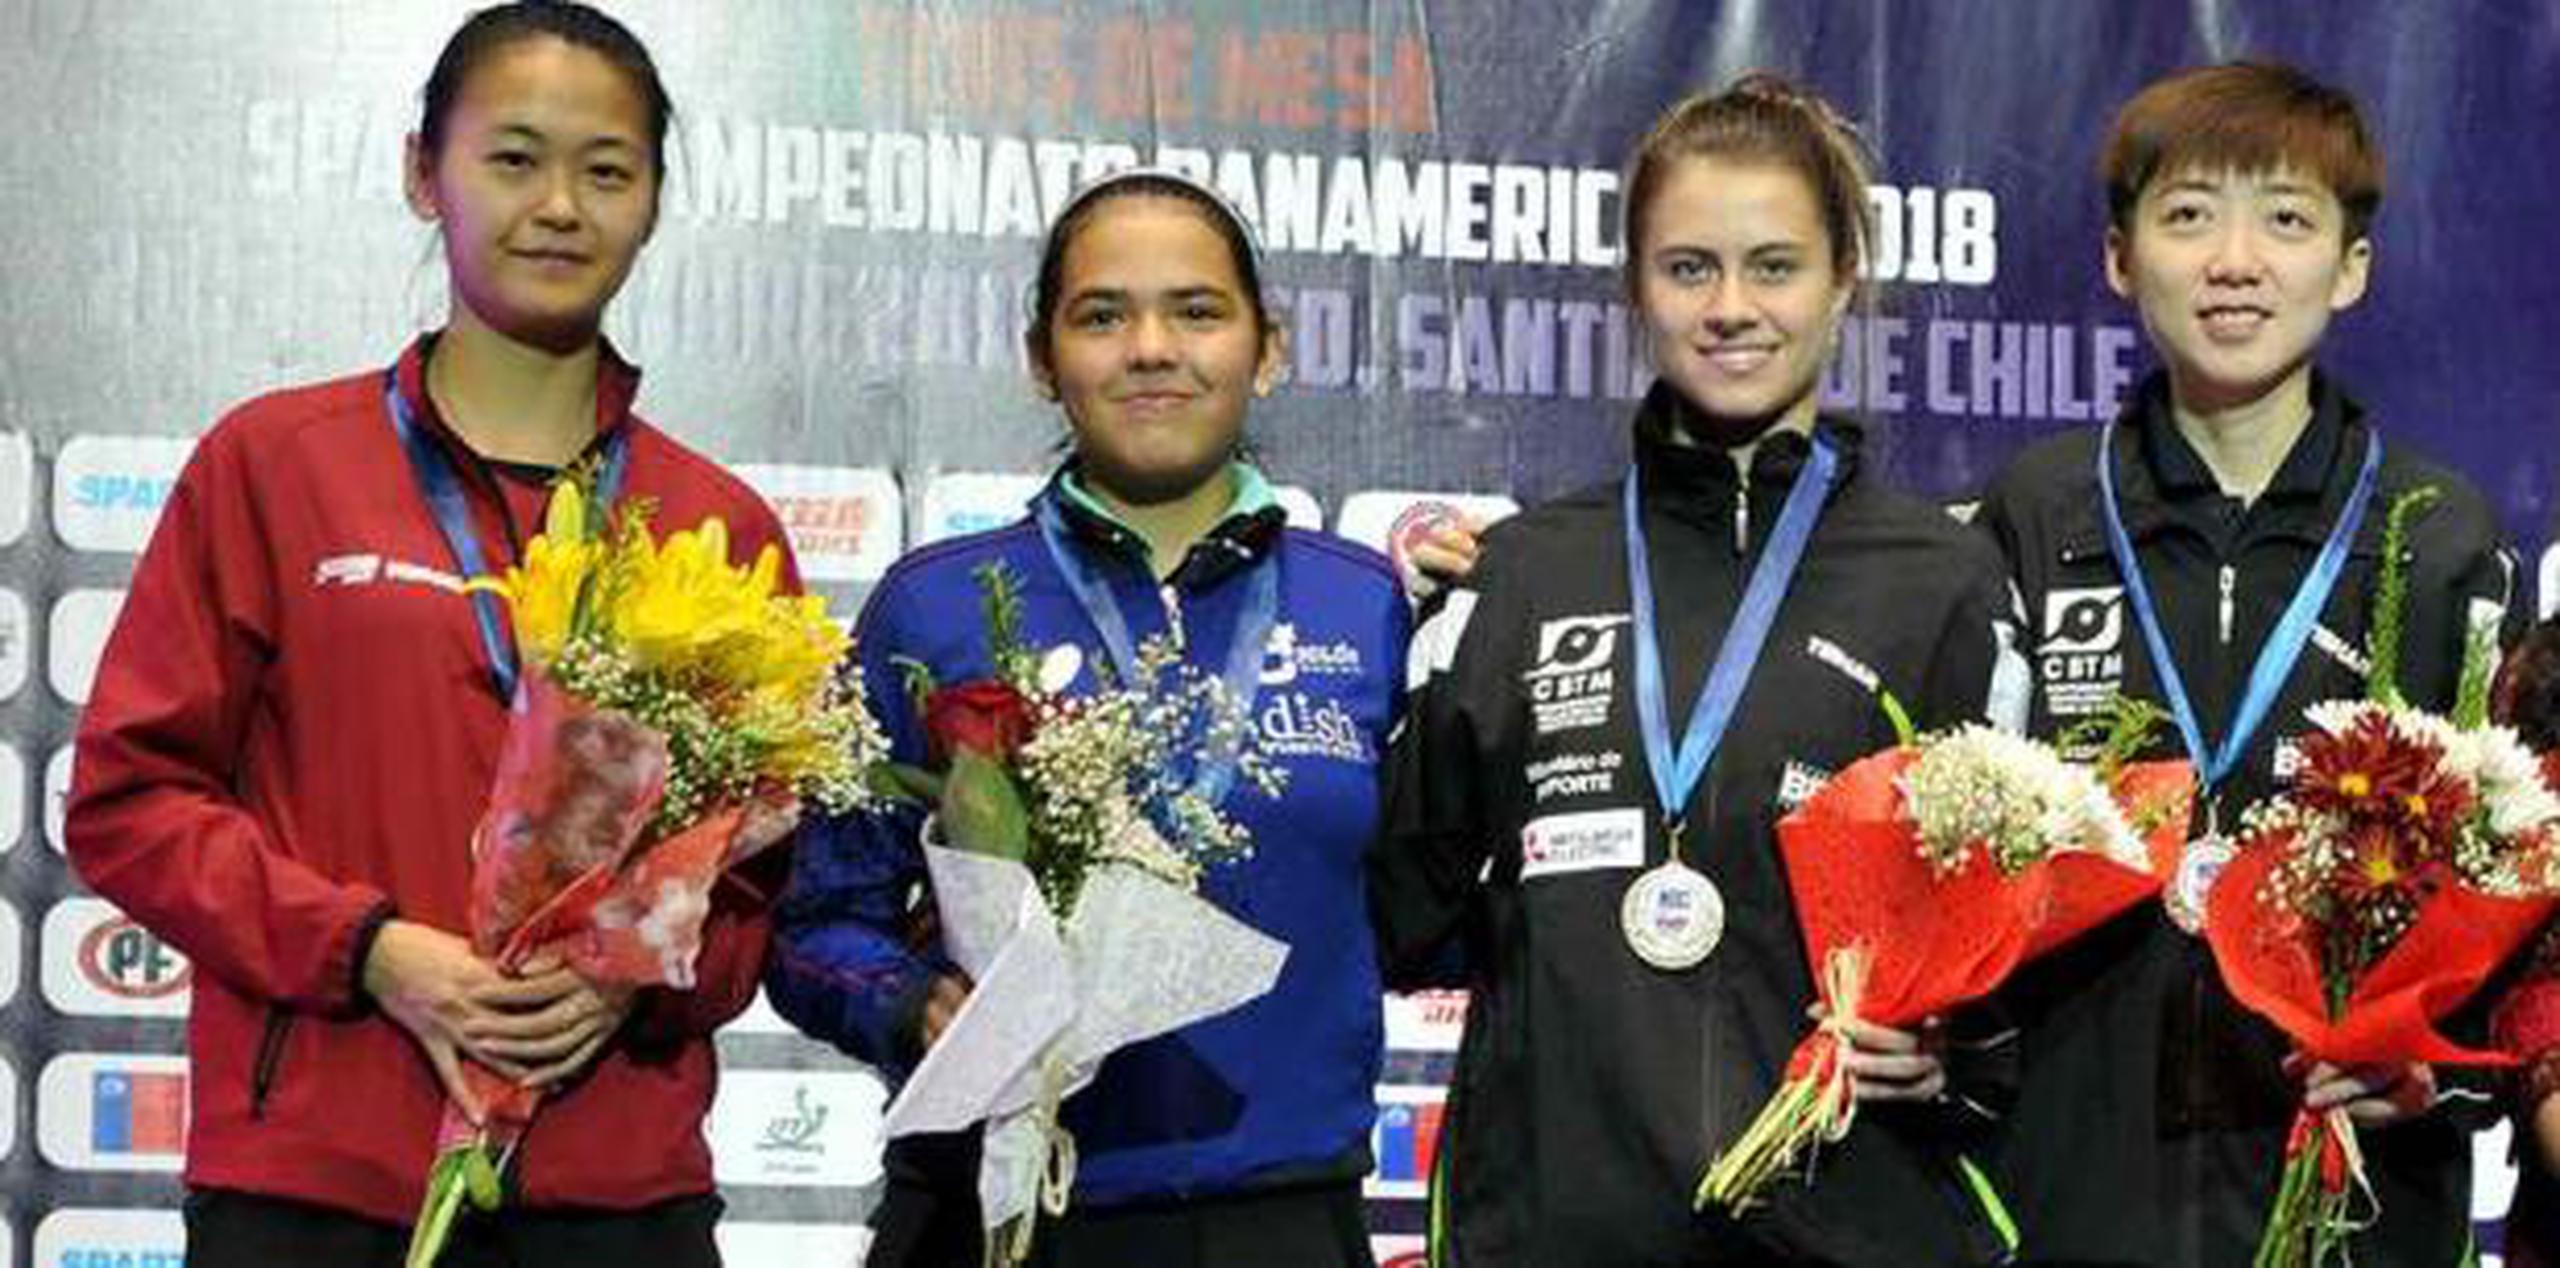 Díaz concluyó el Panamericano celebrado en Chile con las clasificaciones a Lima 2019 en sencillos, dobles femenino mixto y equipo femenino. (suministrada)